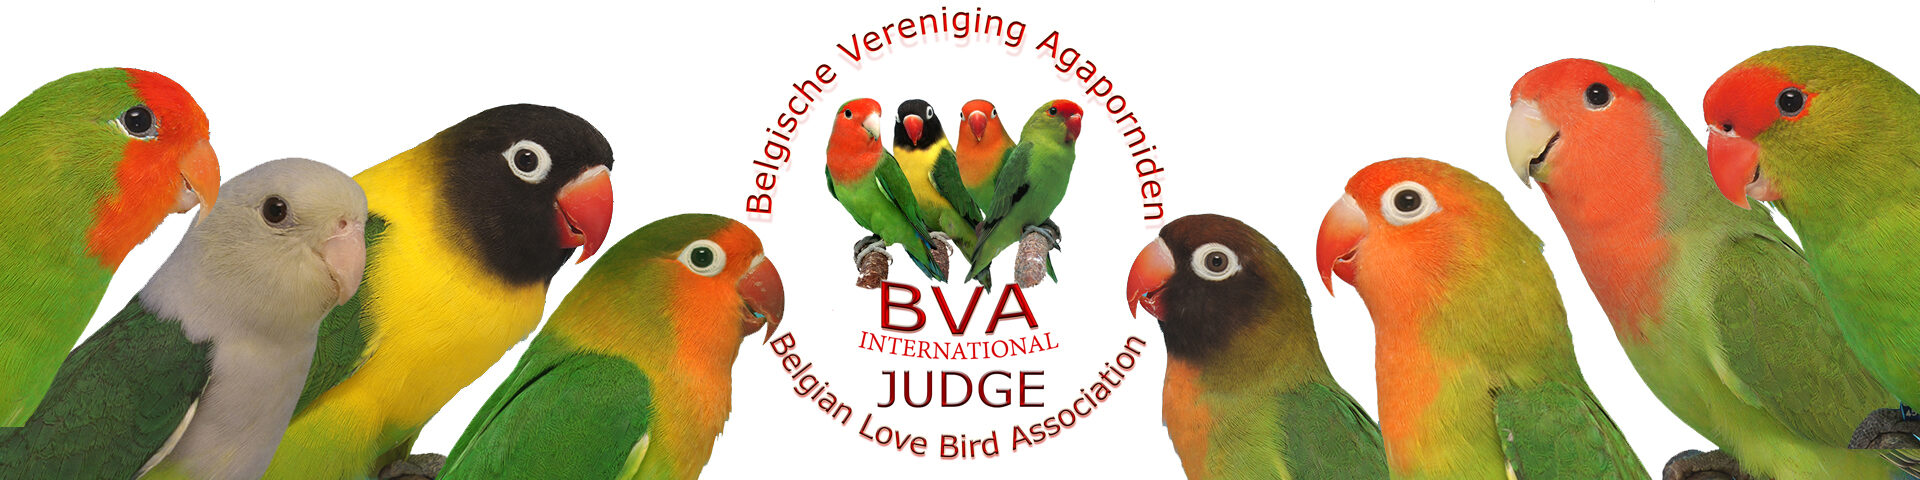 Judges BVA-International